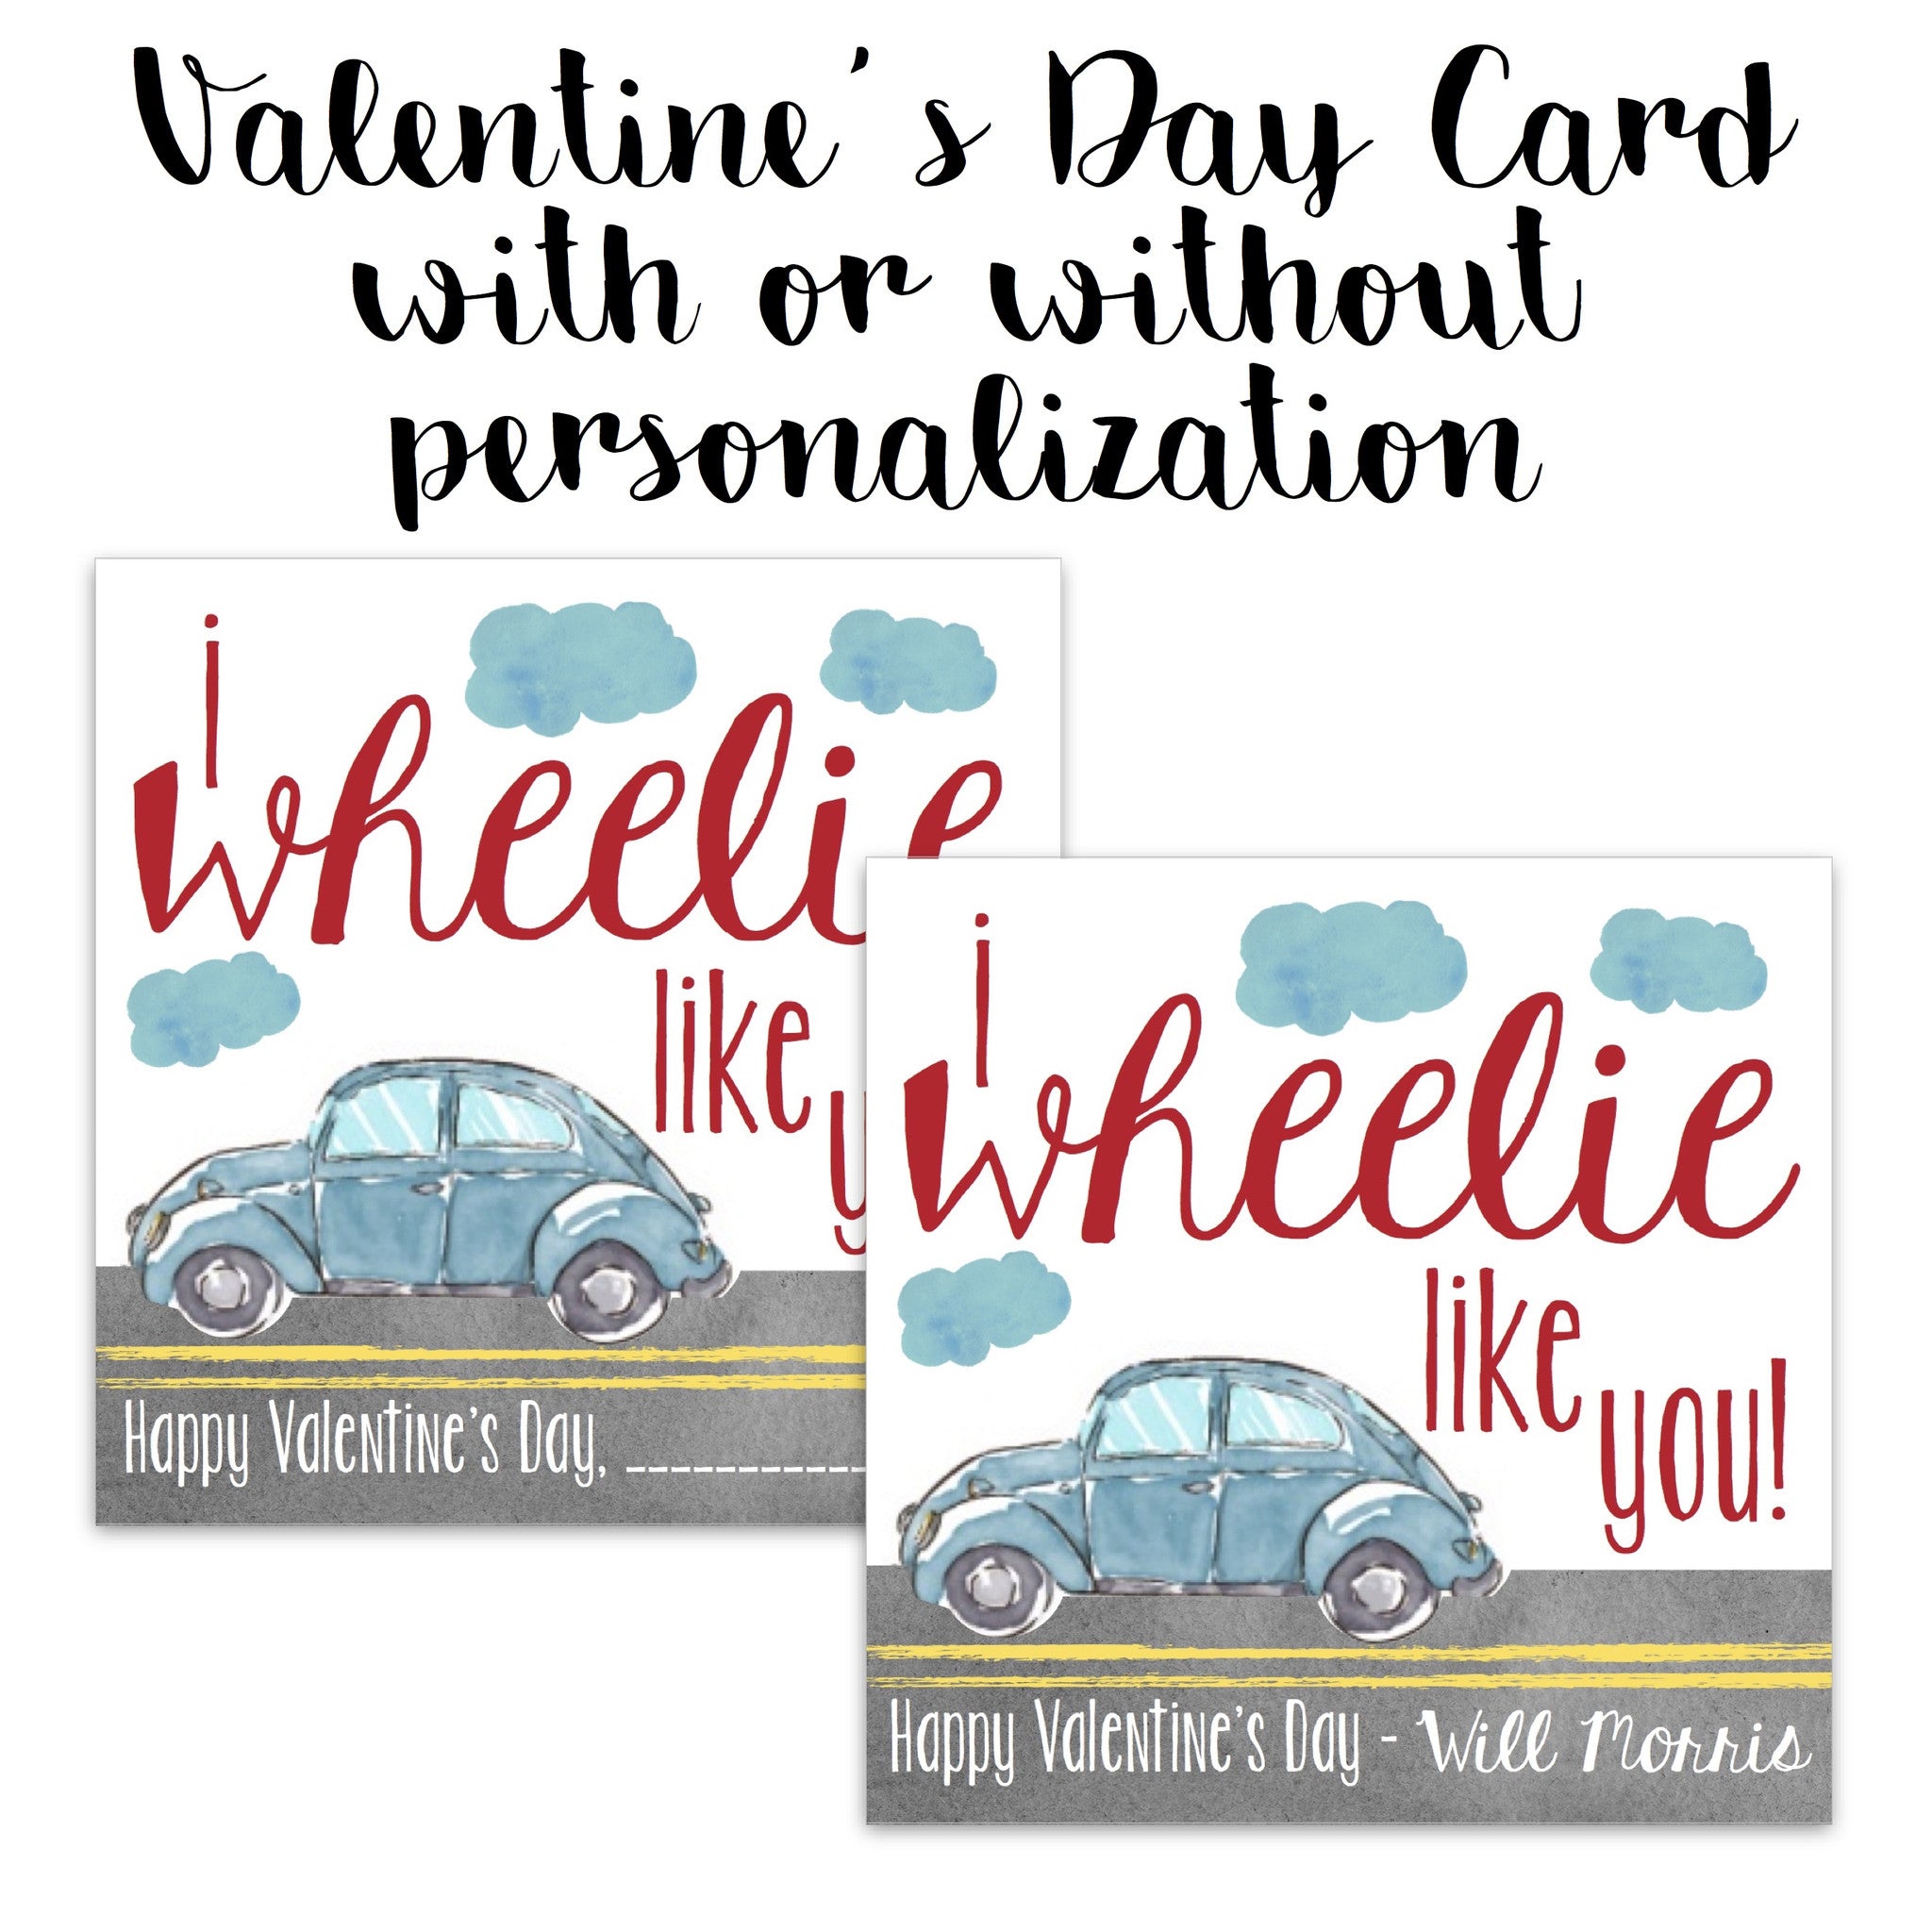 Valentine Card - I "Wheelie" Like You